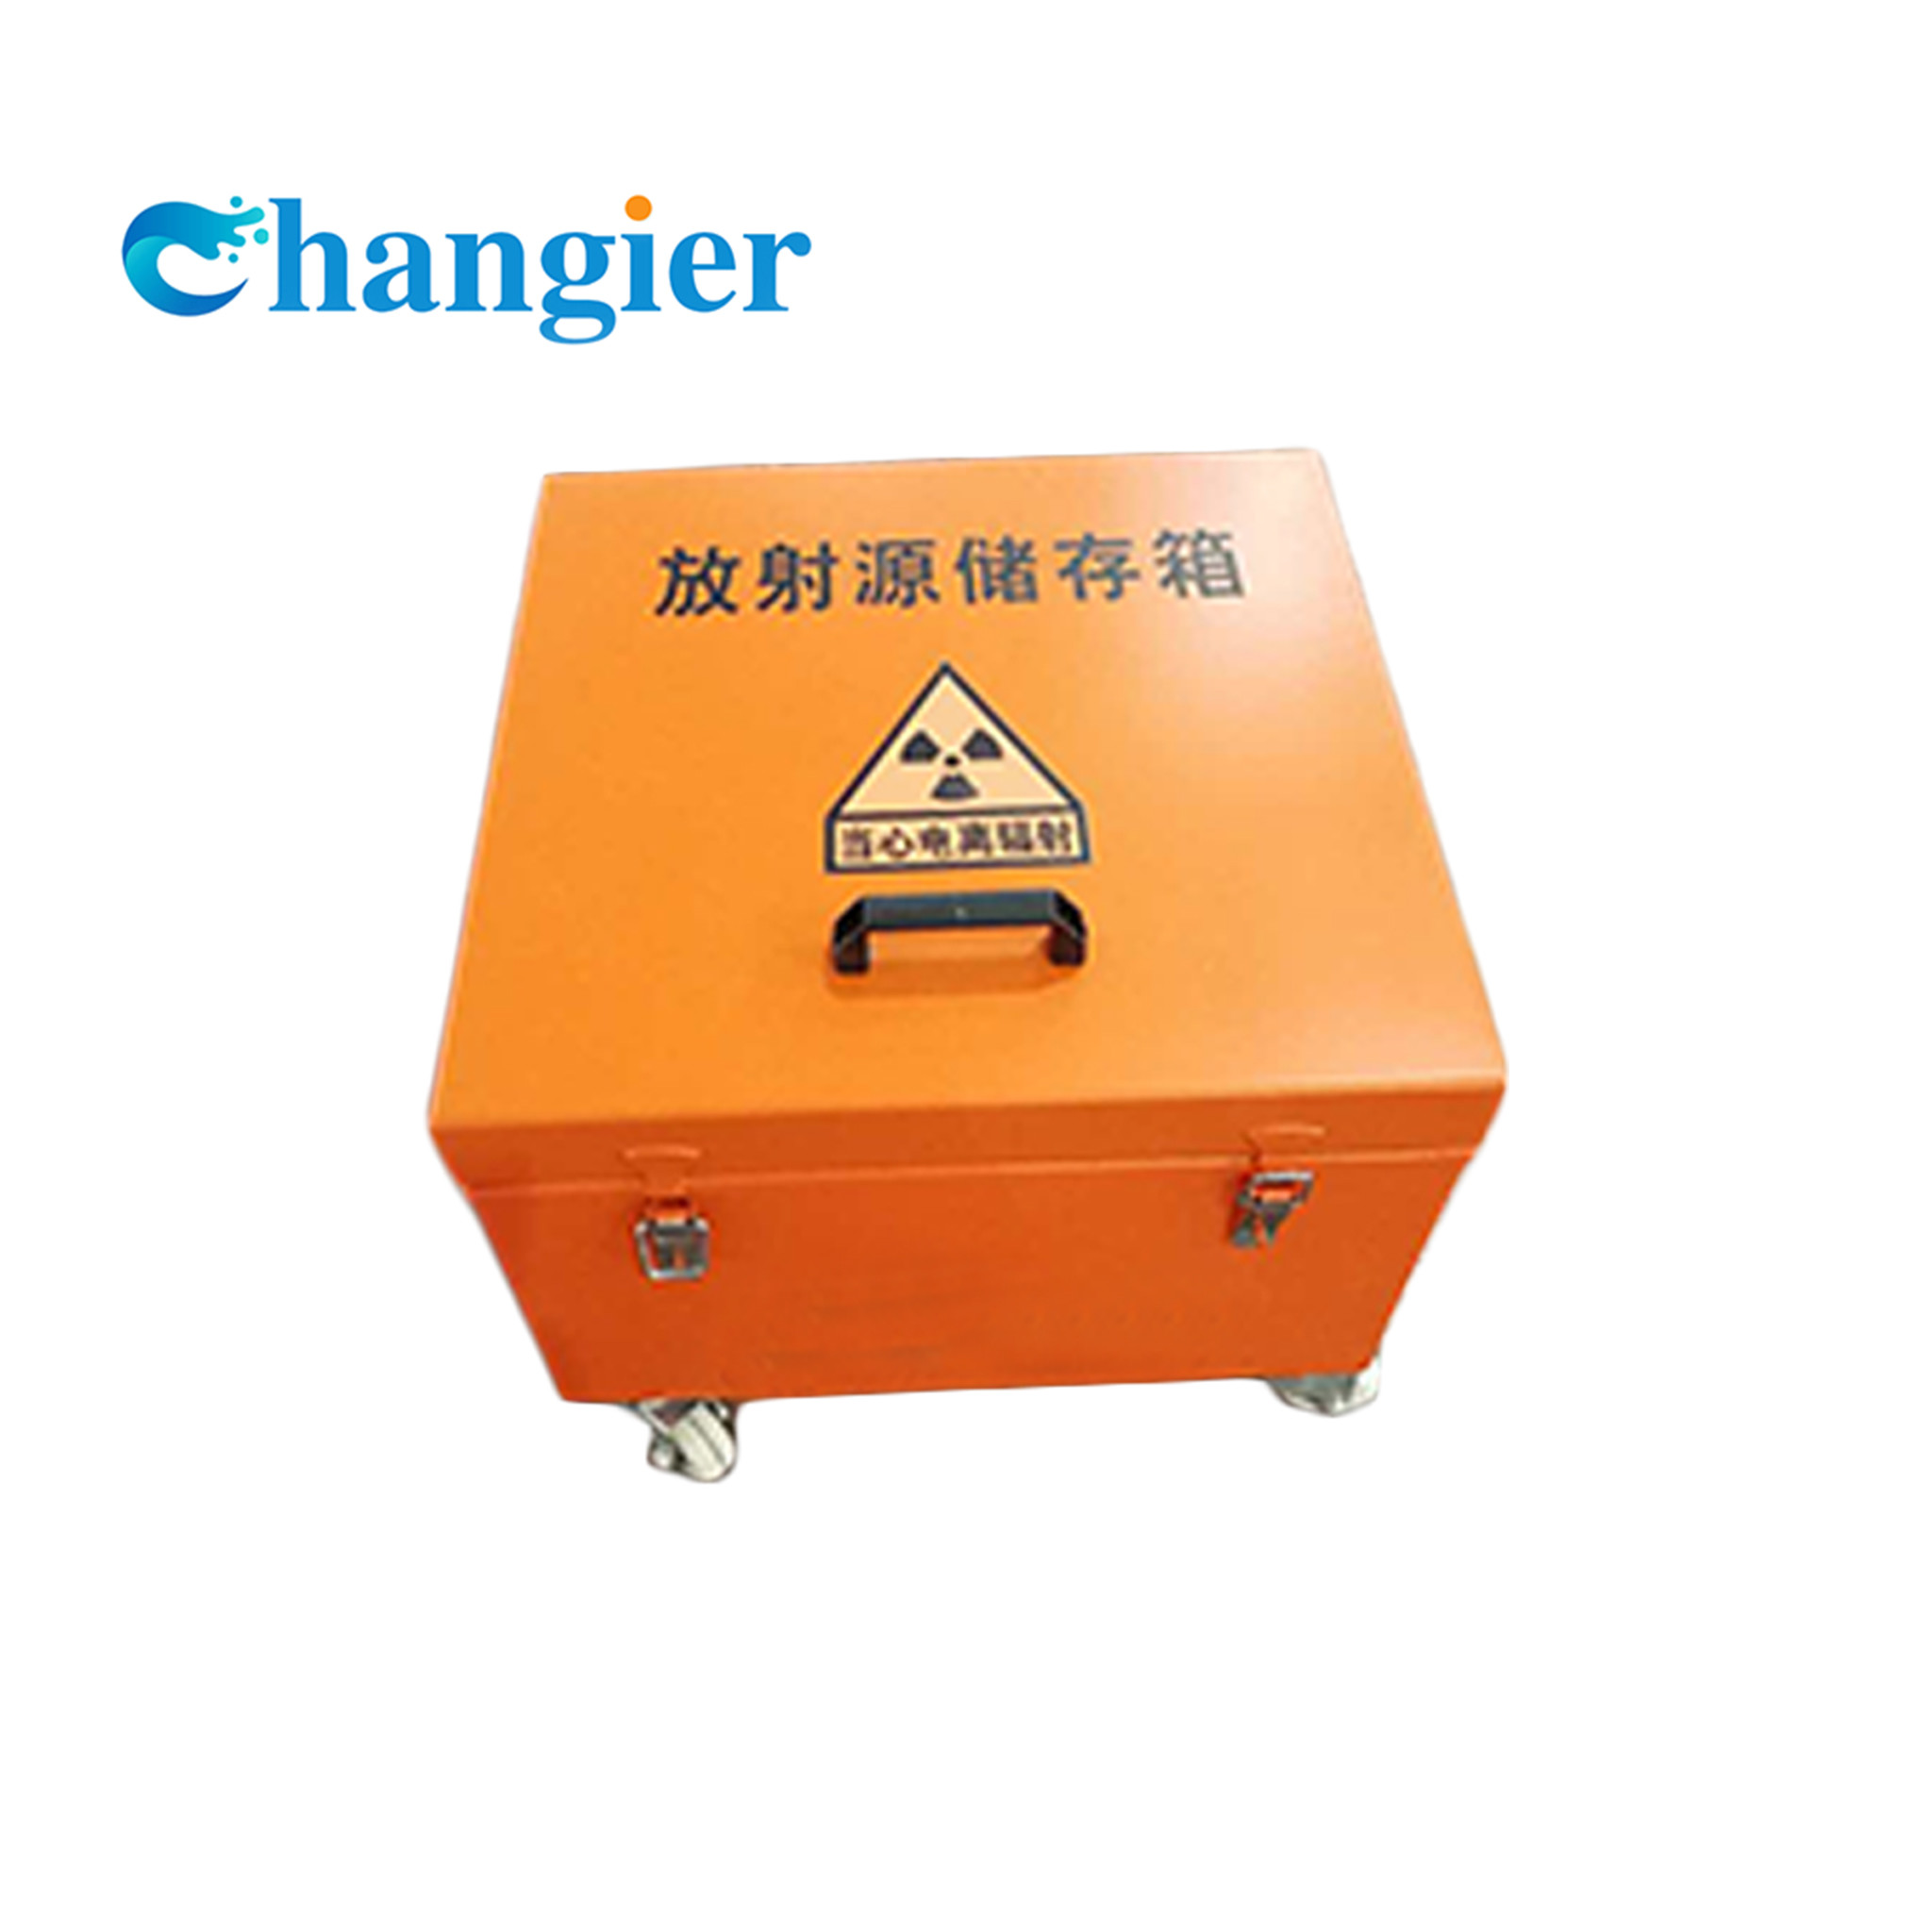 容器のサイズのカスタム化を保護する箱/鉛を保護する放射の証拠の鉛